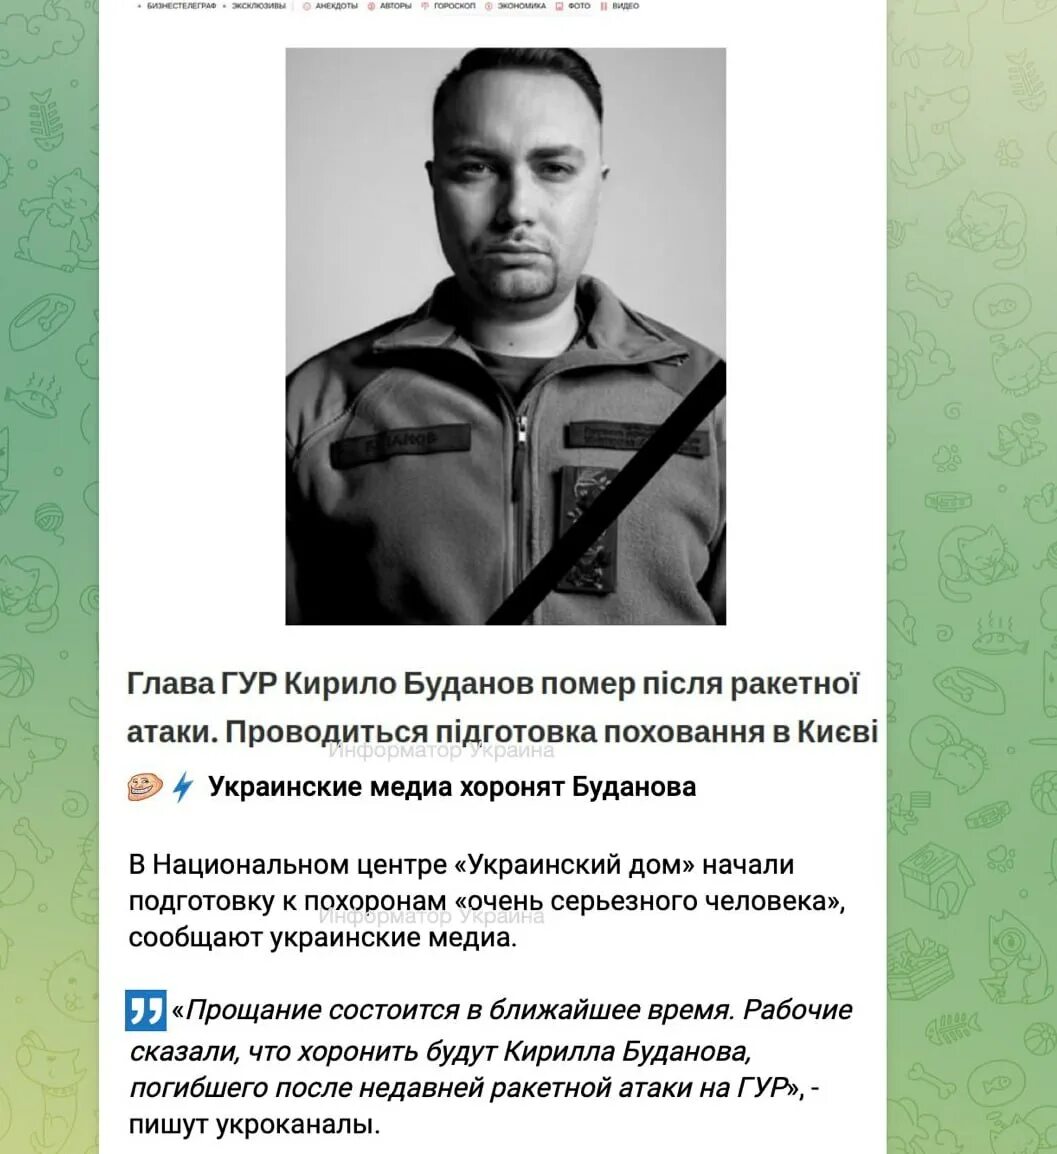 19 какие сведения могут распространять журналисты. Украинский Буданов.